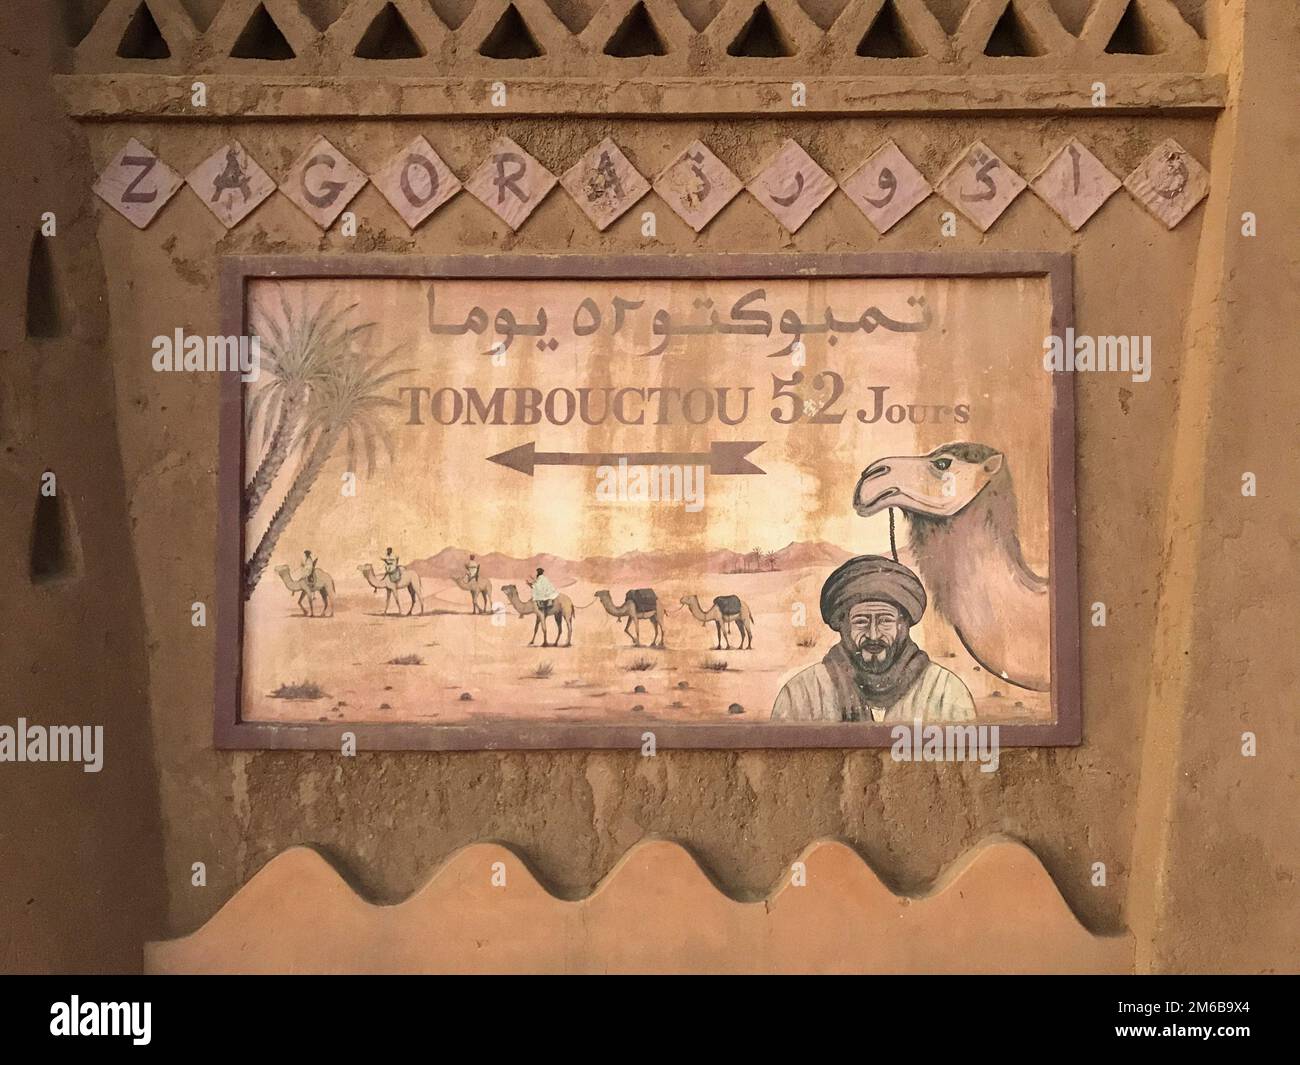 Maroc, Zagora, Maroc, Zagora, peint panneau à Zagora, Maroc montrant le chemin vers Tombouctou et le temps nécessaire pour l'atteindre à dos de chameau Banque D'Images